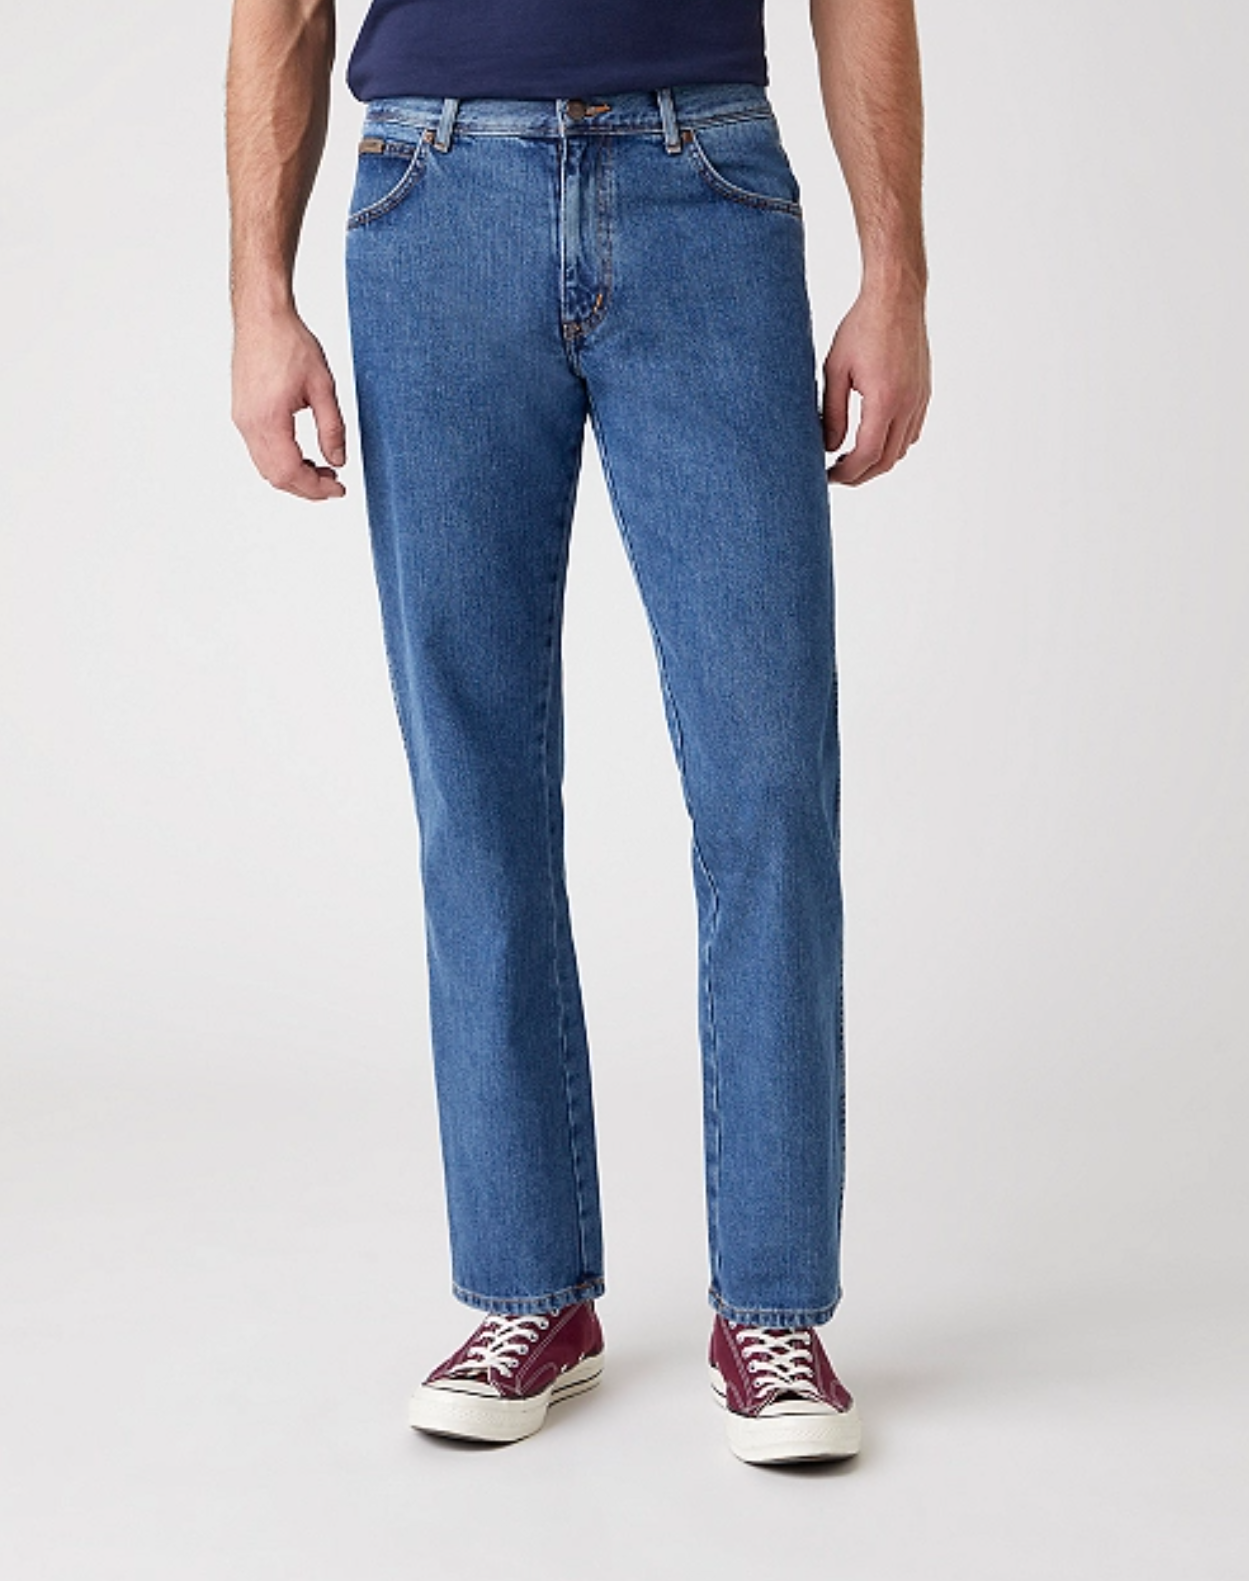 Wrangler Texas Non-Stretch Jeans | Men's Wrangler Jeans – Sam Turner & Sons